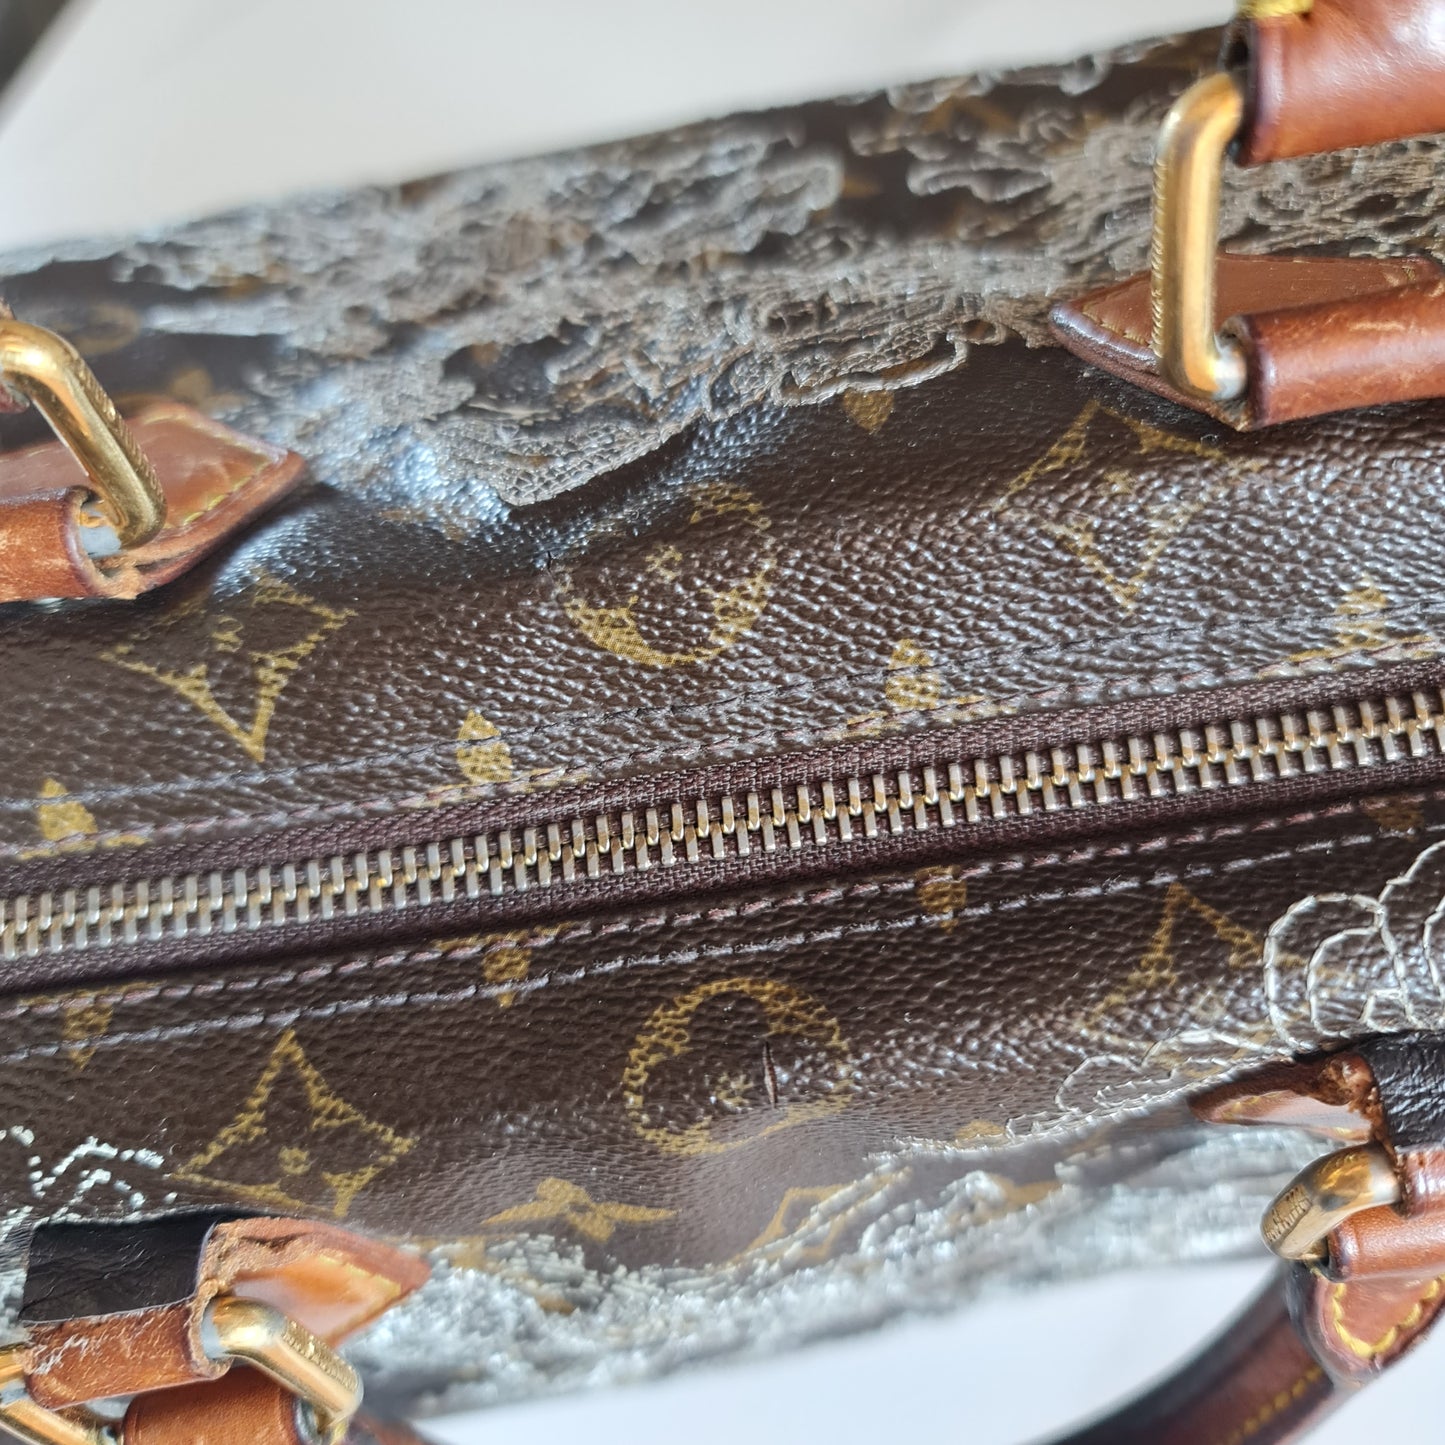 Louis Vuitton Silver Speedy Dentelle Bag (800)